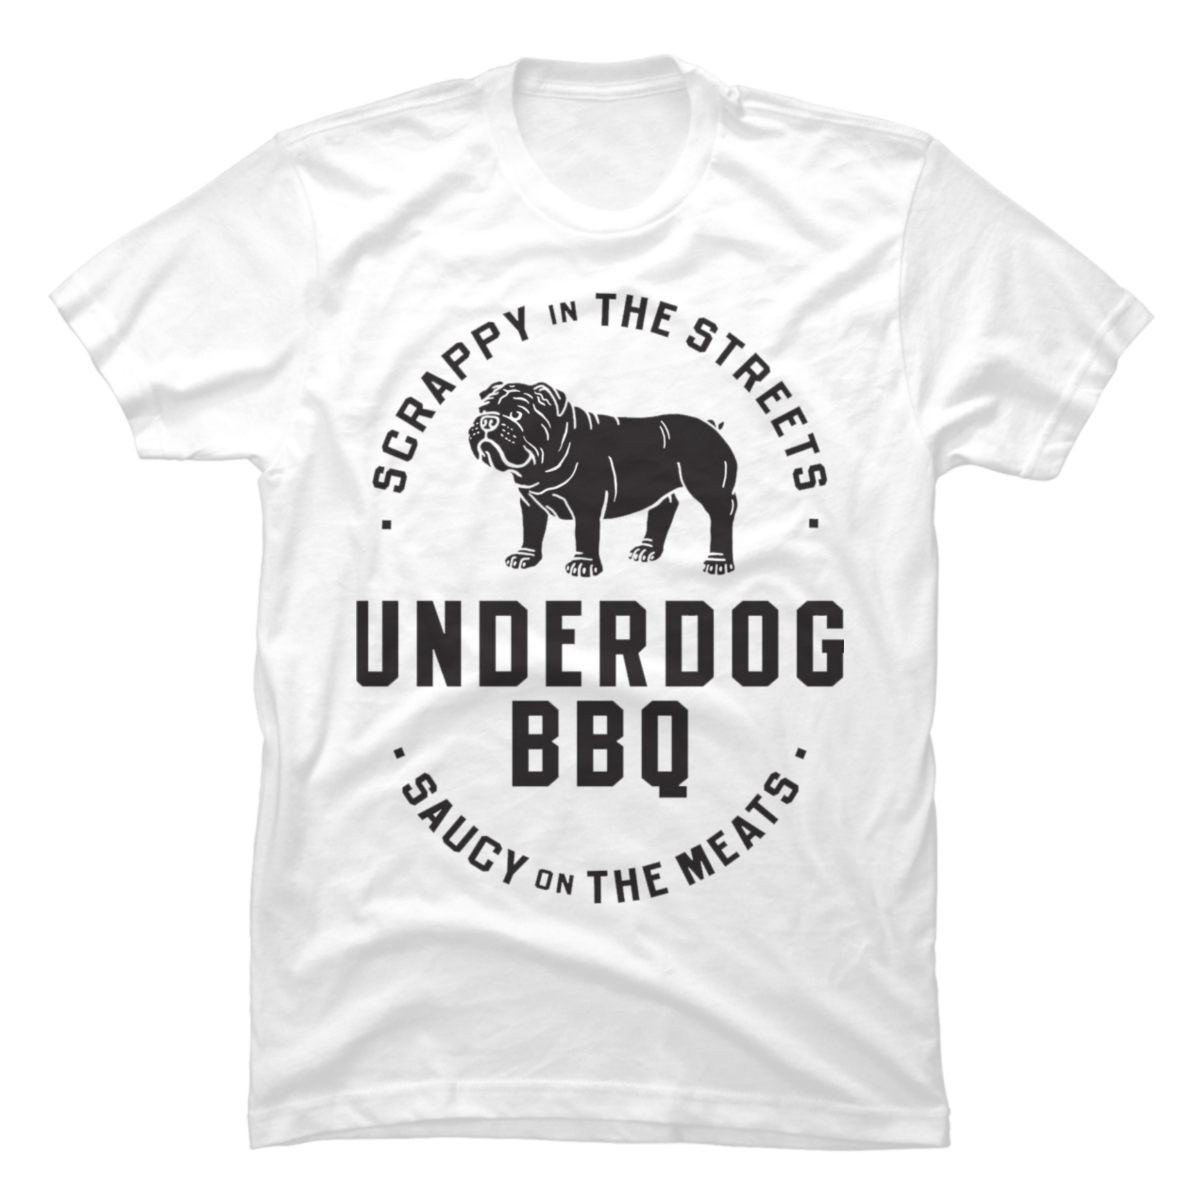 underdog cartoon t shirts